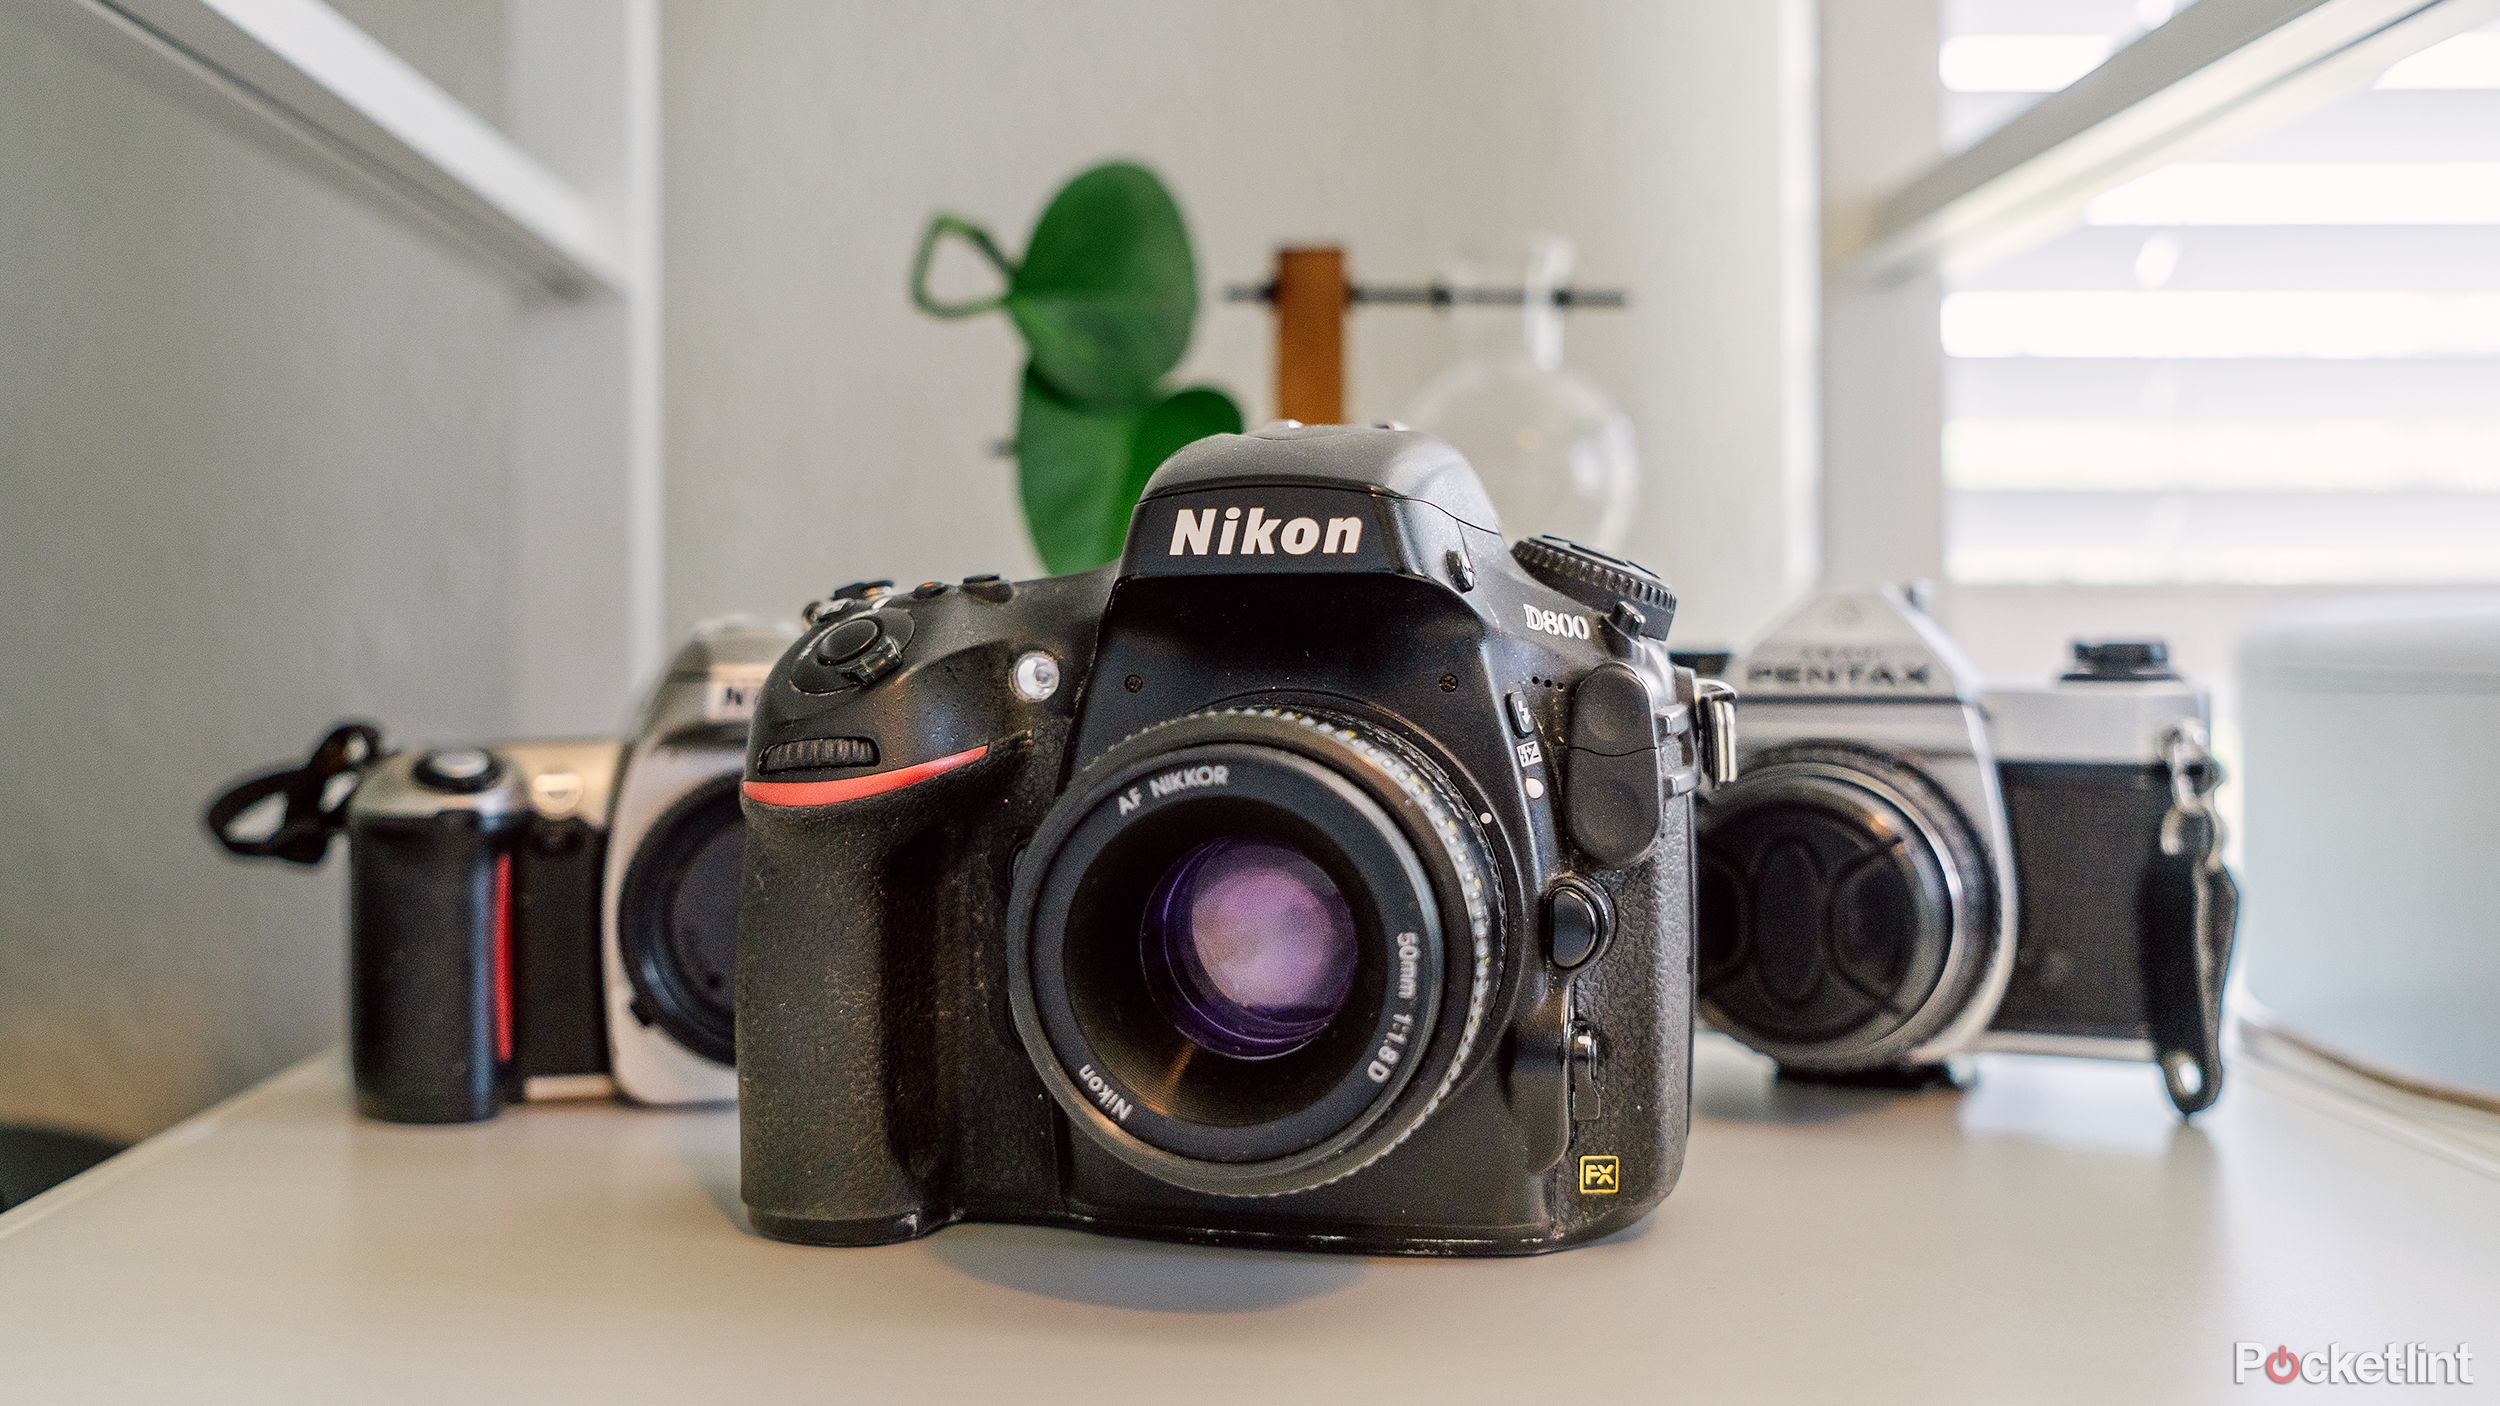 یک Nikon D800 در مقابل دو دوربین فیلمبرداری روی یک قفسه قرار دارد. 